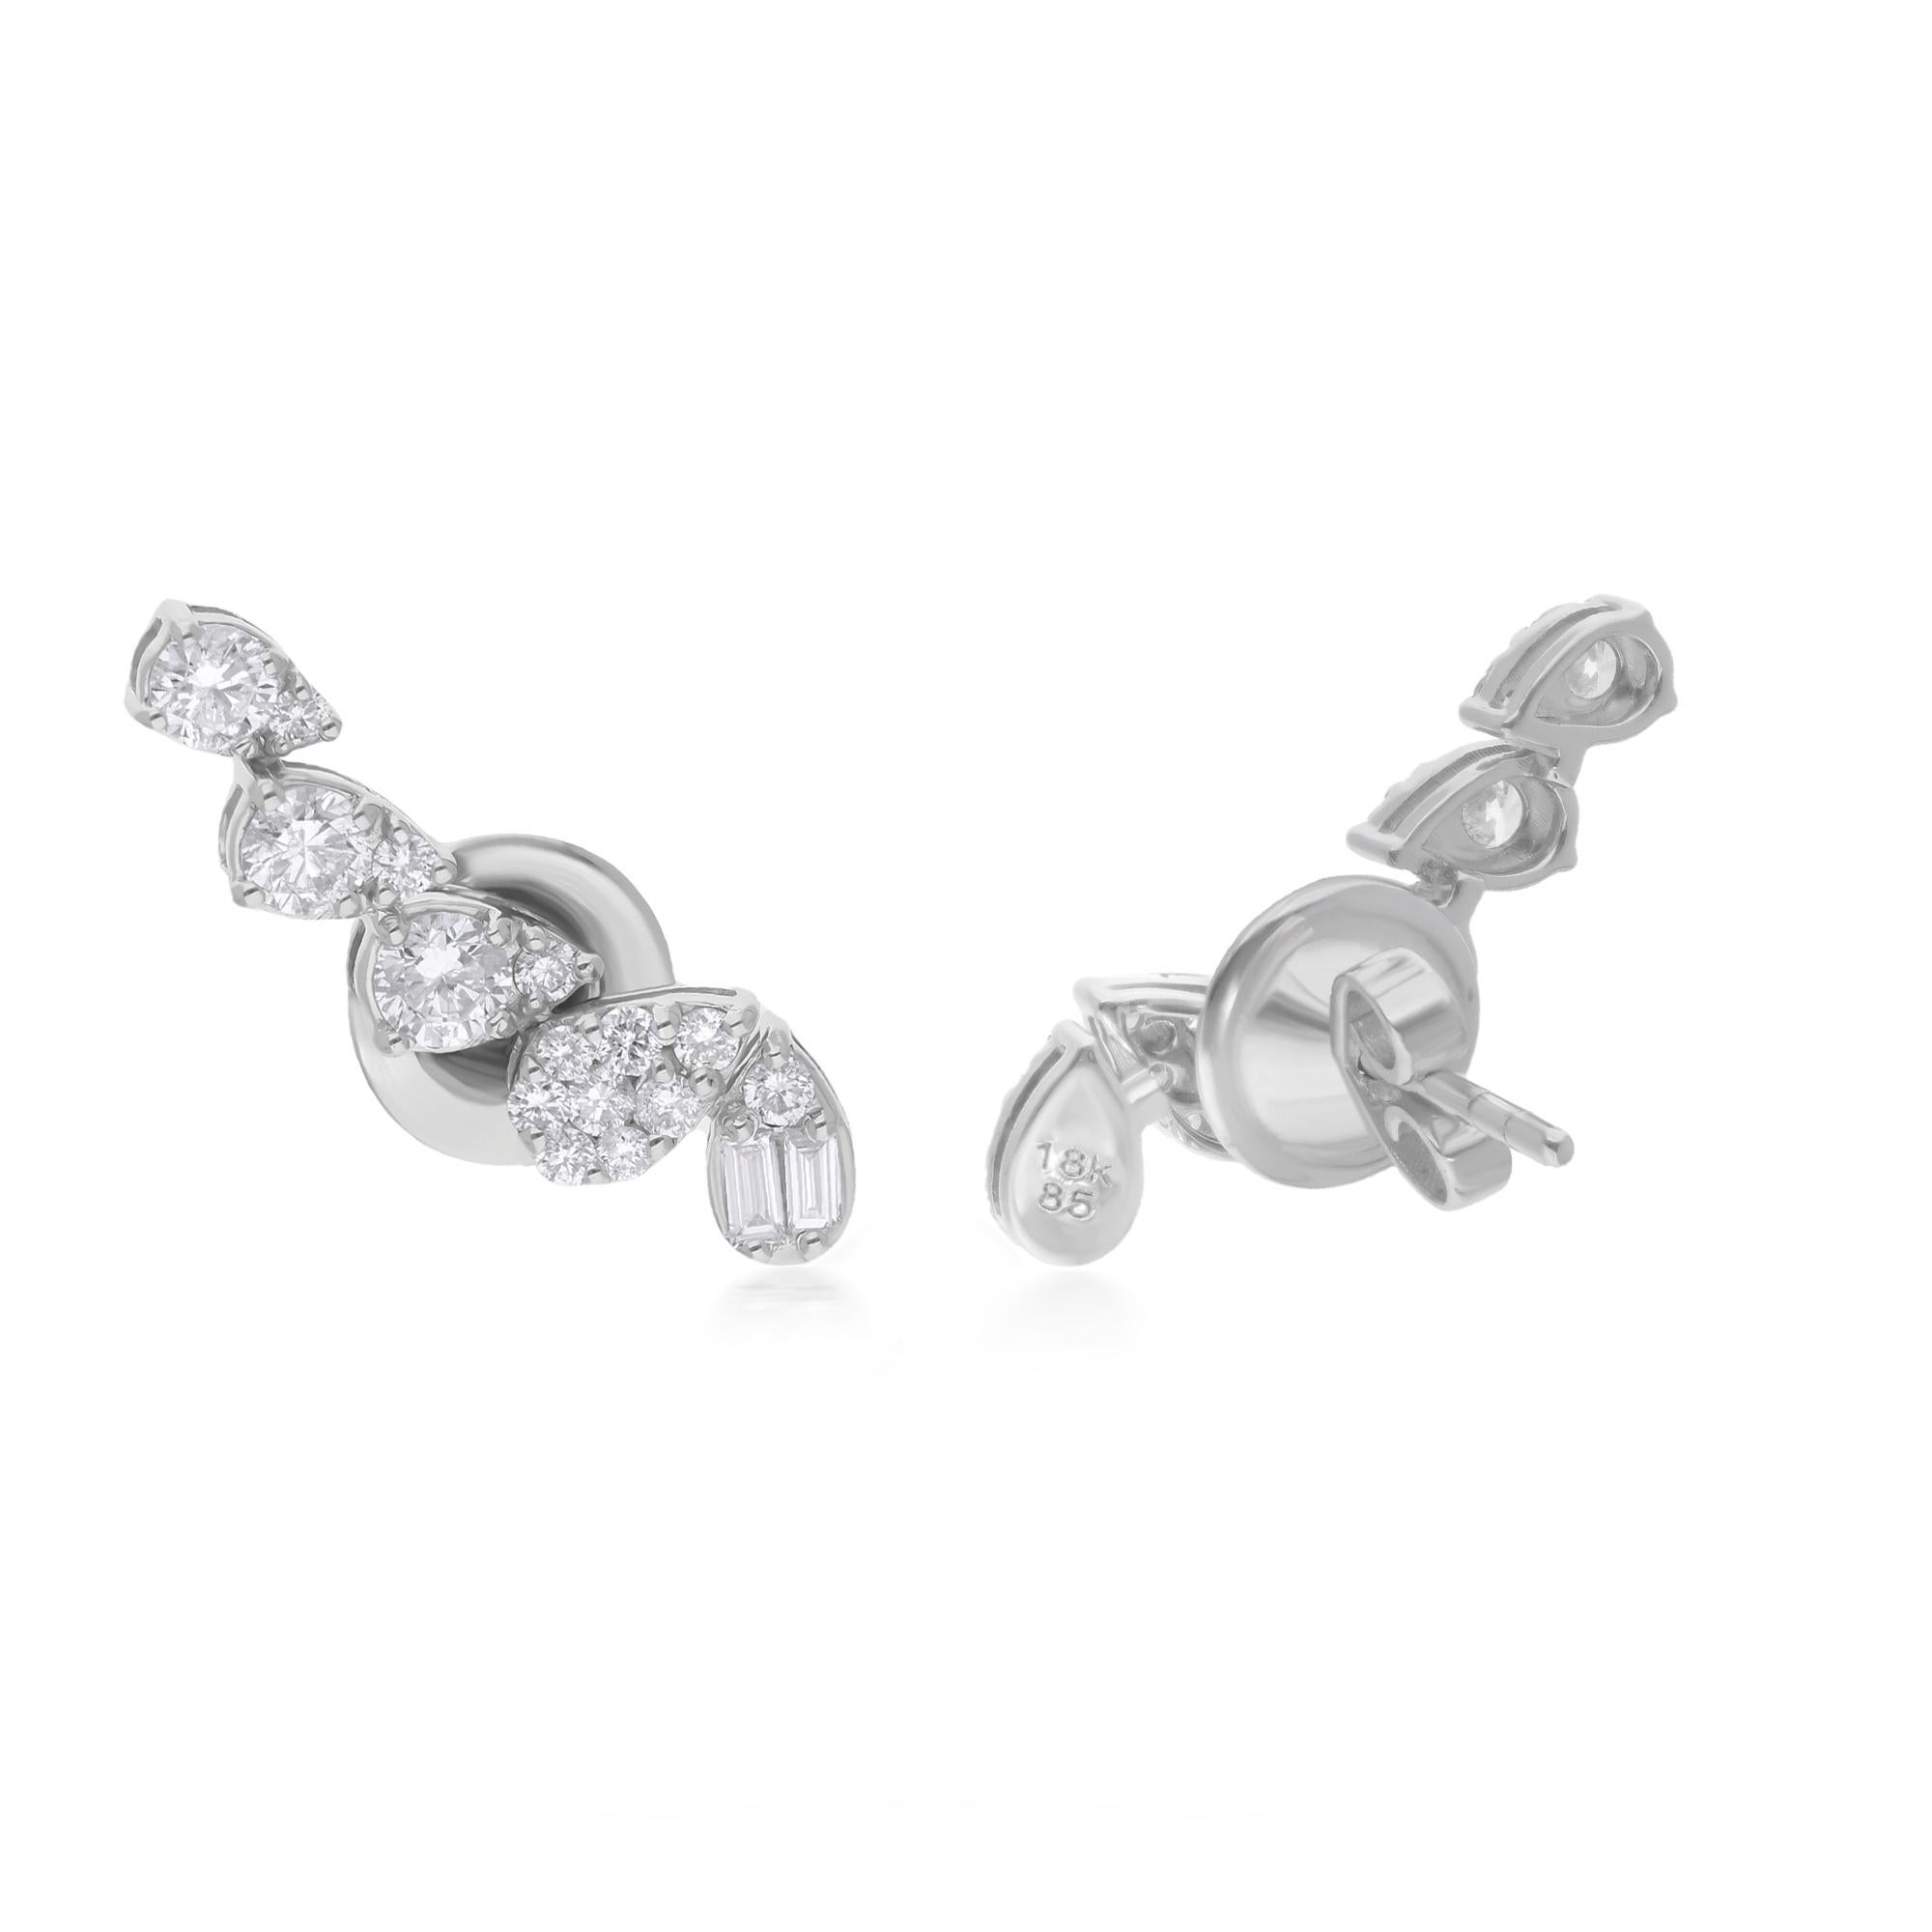 Lassen Sie sich von der exquisiten Eleganz dieser Baguette & Round Diamond Climber Earrings verzaubern, die sorgfältig in 18 Karat Weißgold gefertigt wurden. Die mit Präzision und Leidenschaft handgefertigten Ohrringe strahlen einen zeitlosen Charme